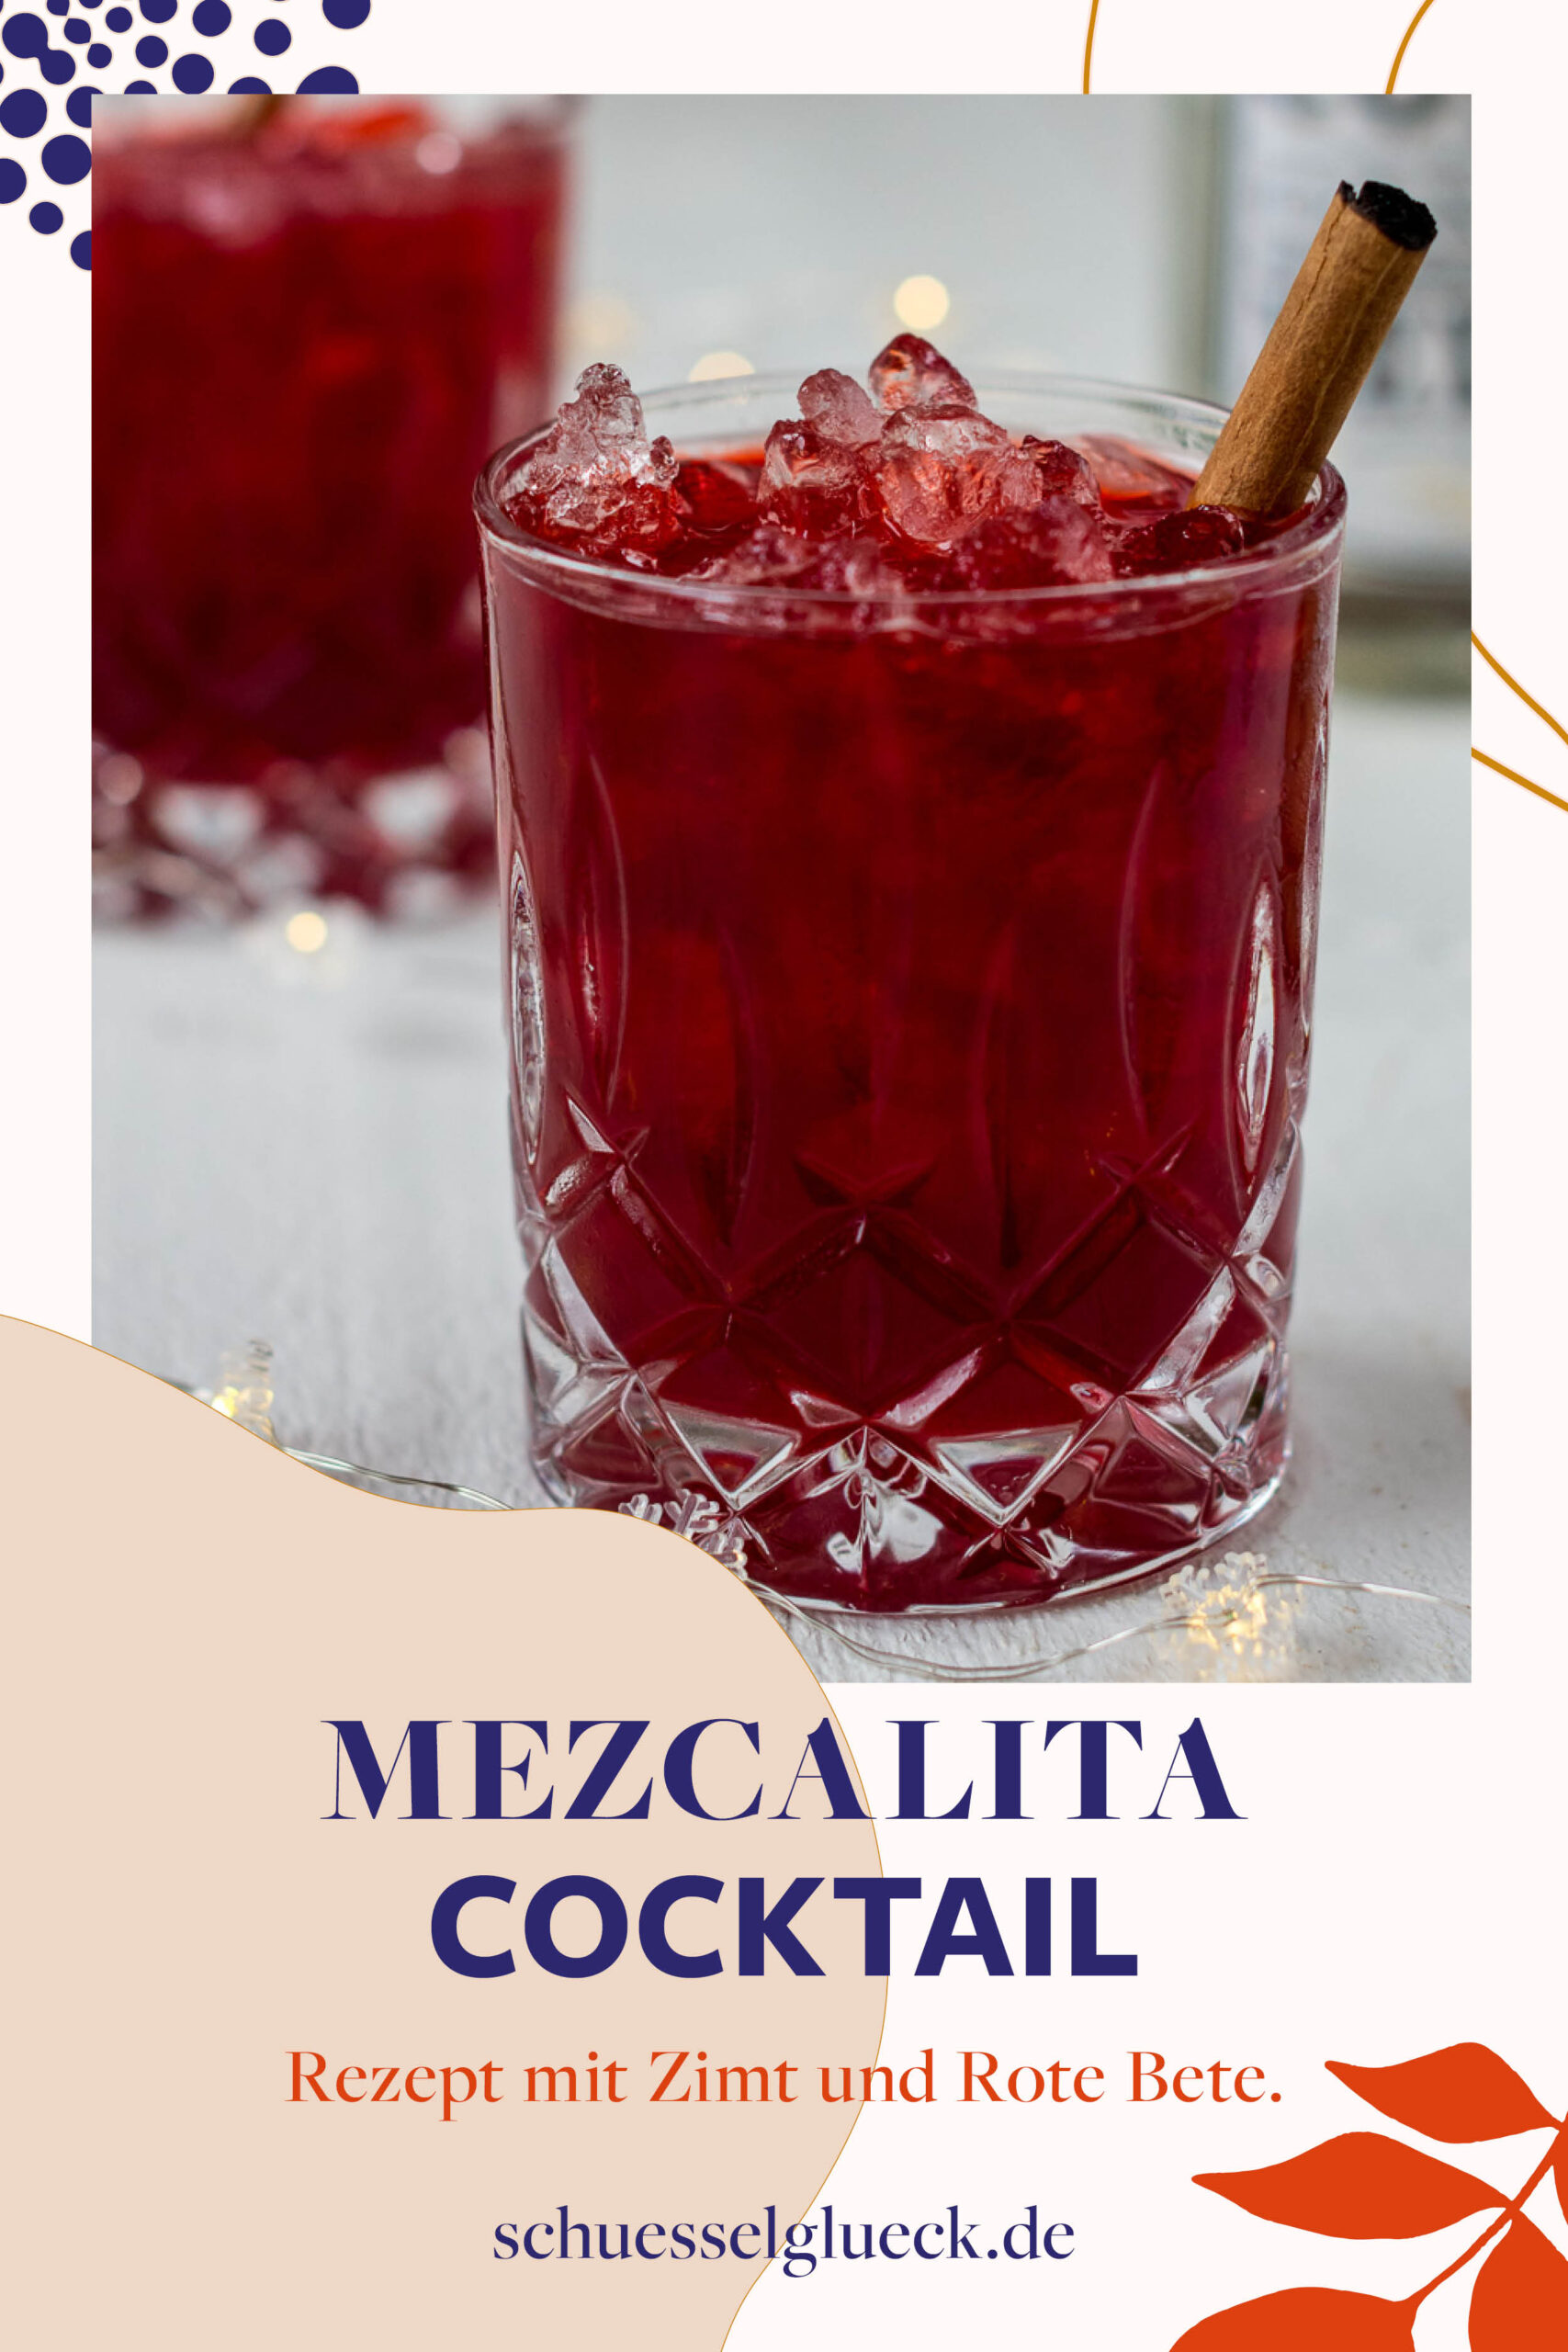 Rote Bete Mezcalita mit Zimt – der perfekte Feiertags-Cocktail